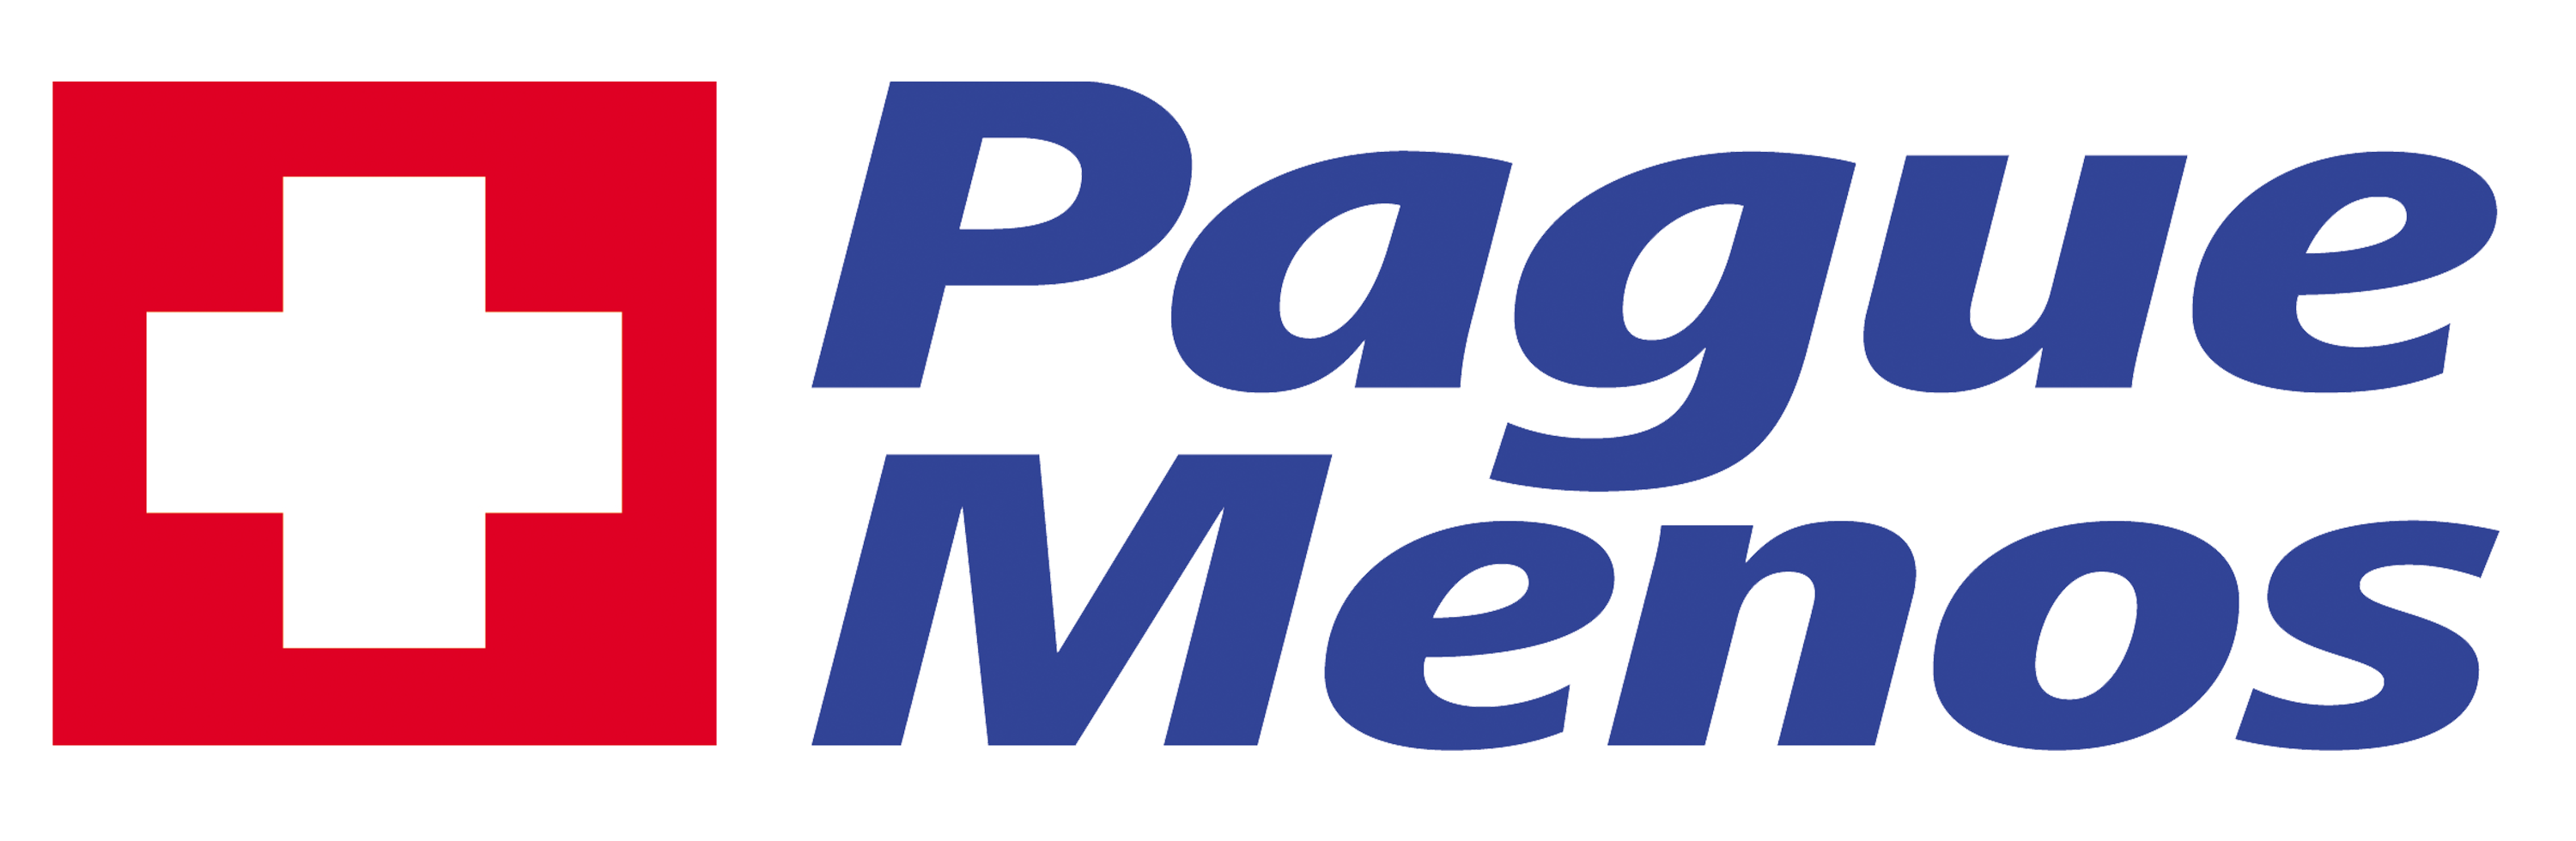 Farmacia Pague Menos - Planalto - MG